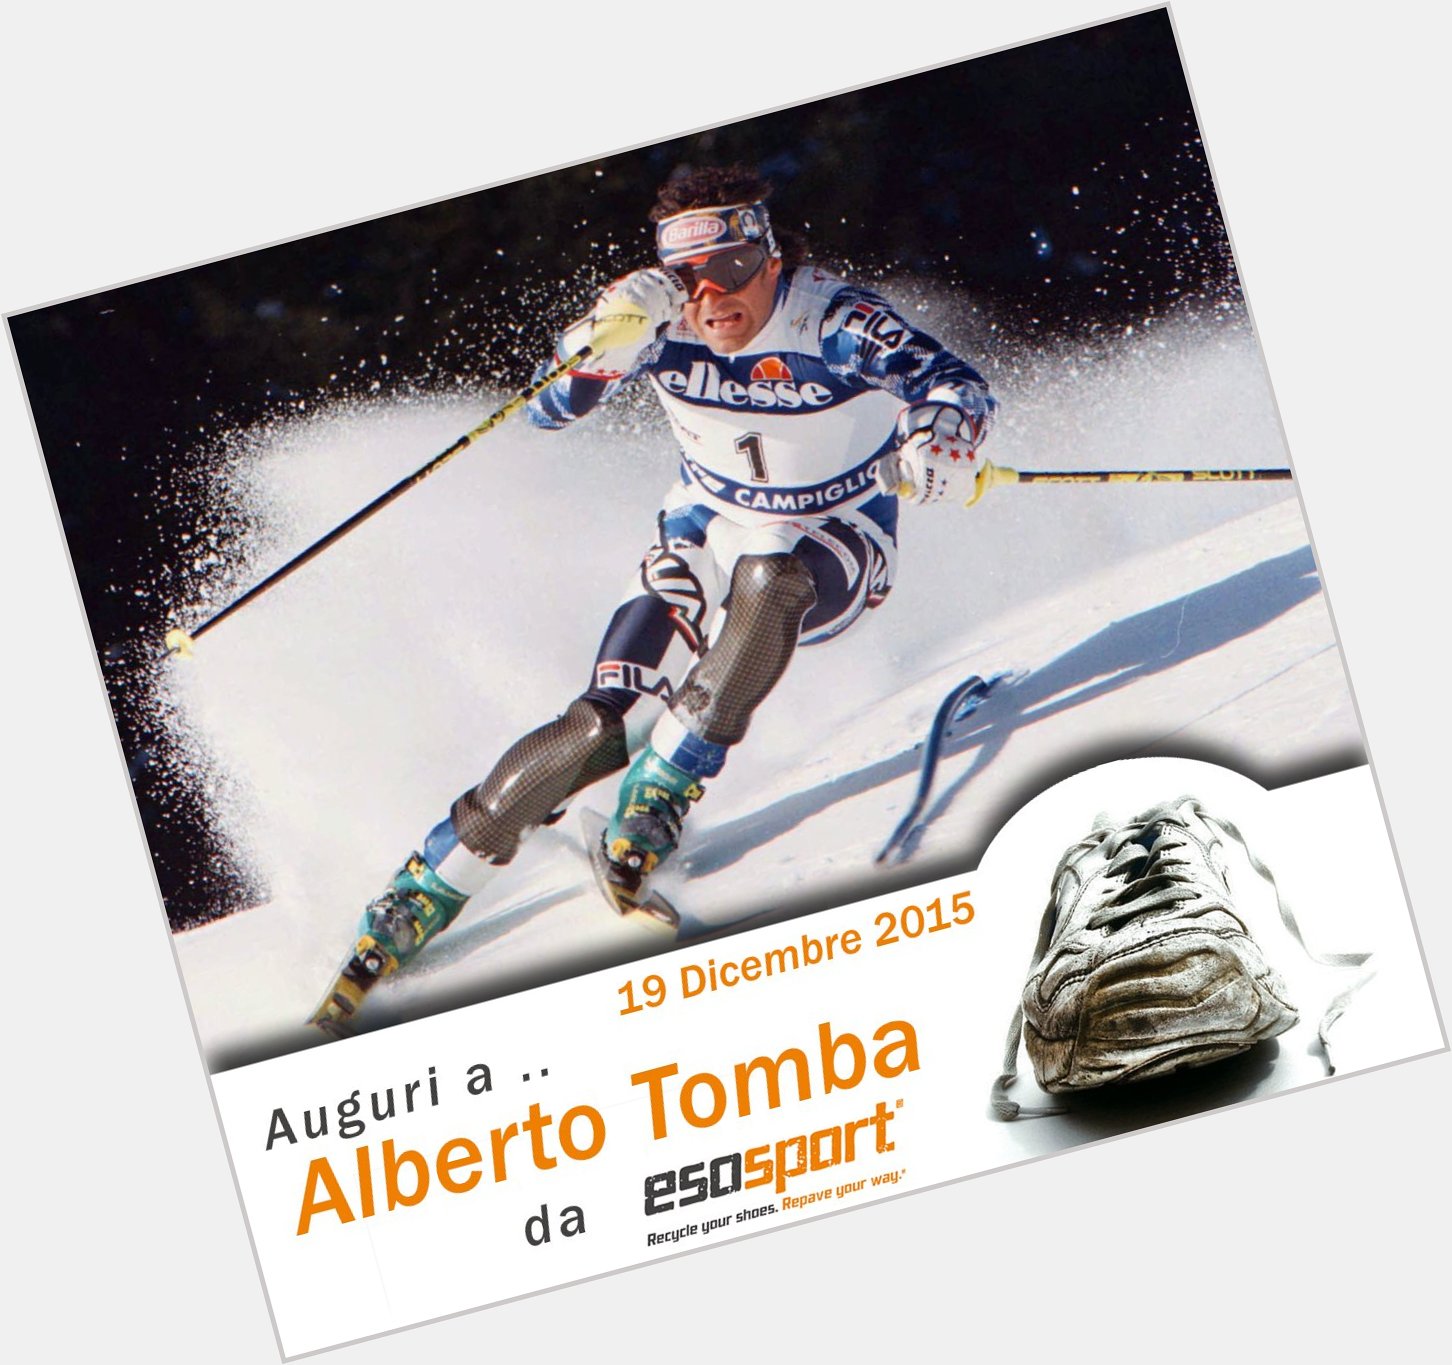 Auguri da ad AlbertoTomba per il suo compleanno! Happy birthday Alberto Tomba! 